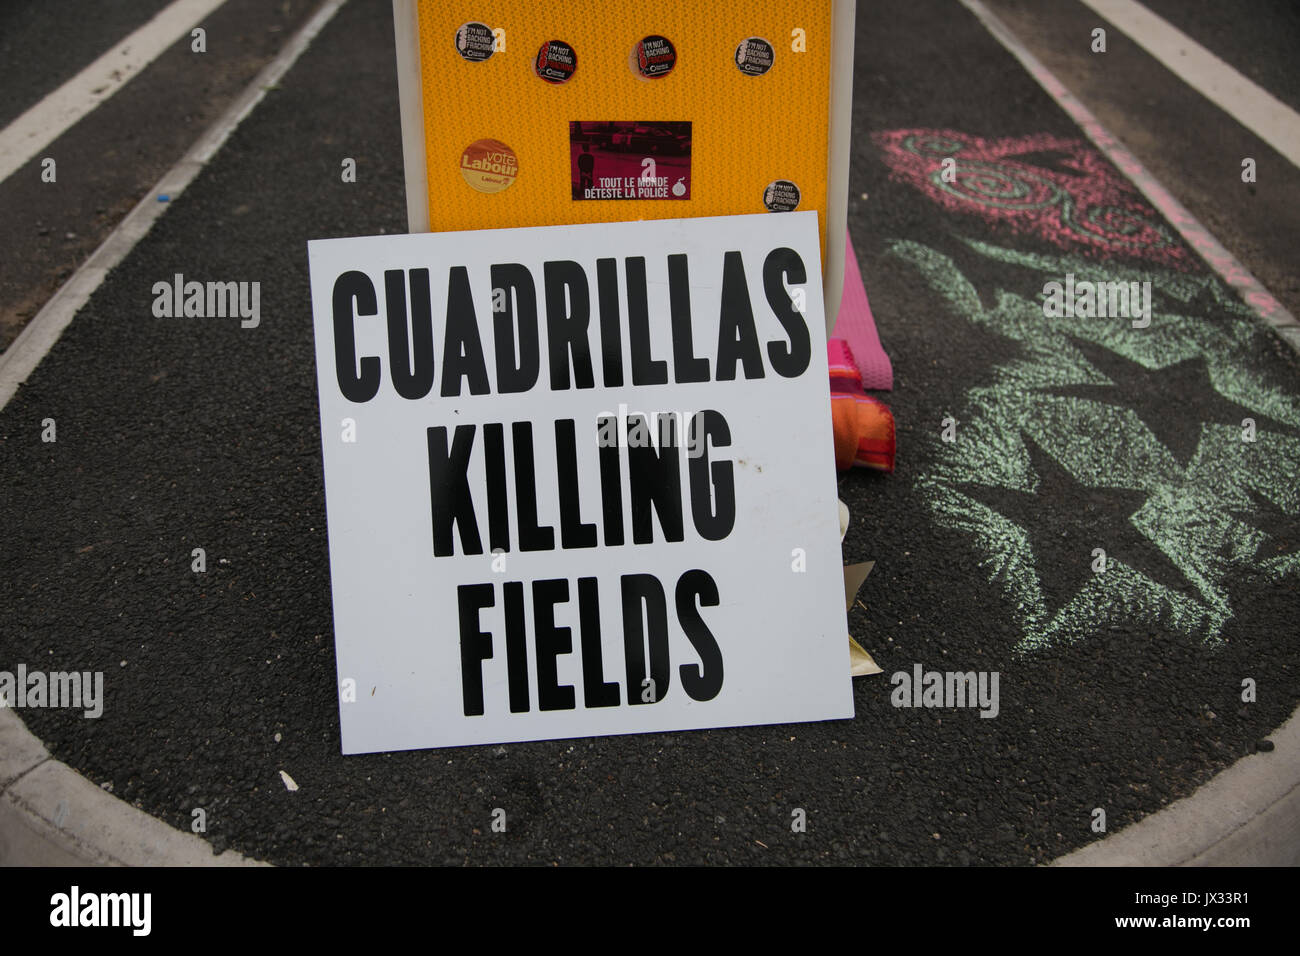 Les militants anti-fracturation et manifestants devant les portes de la Quadrilla site fracturation 31 juin, nouvelle route de Preston, Lancashire, Royaume-Uni. Pennadomo Banque D'Images